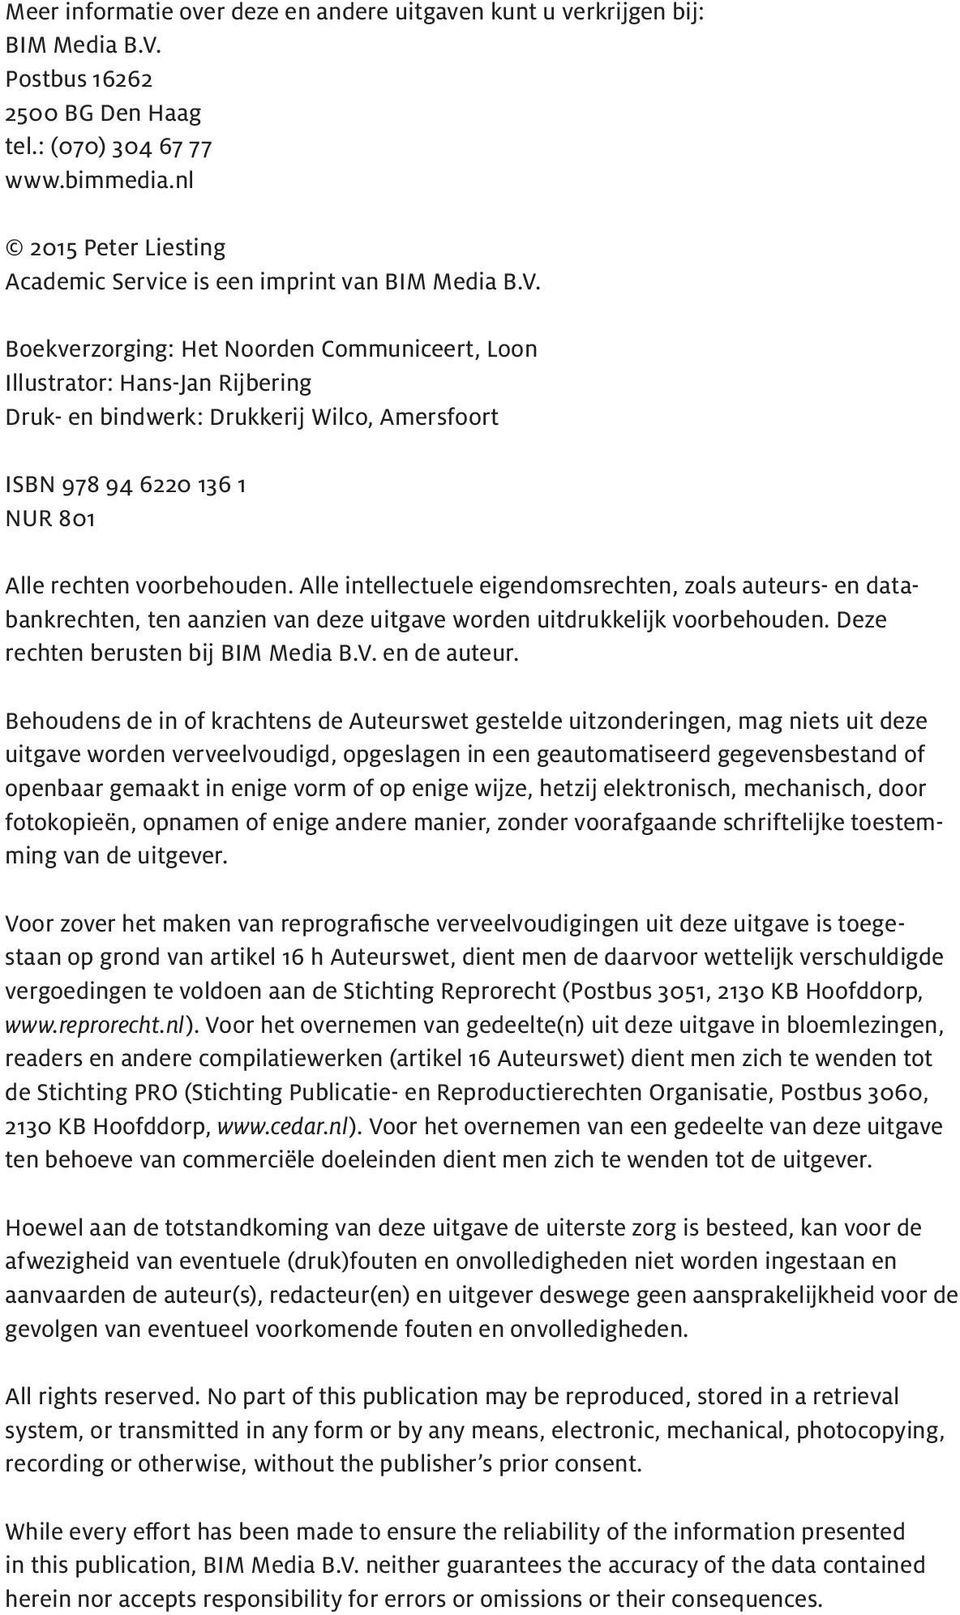 Boekverzorging: Het Noorden Communiceert, Loon Illustrator: Hans-Jan Rijbering Druk- en bindwerk: Drukkerij Wilco, Amersfoort ISBN 978 94 6220 136 1 NUR 801 Alle rechten voorbehouden.